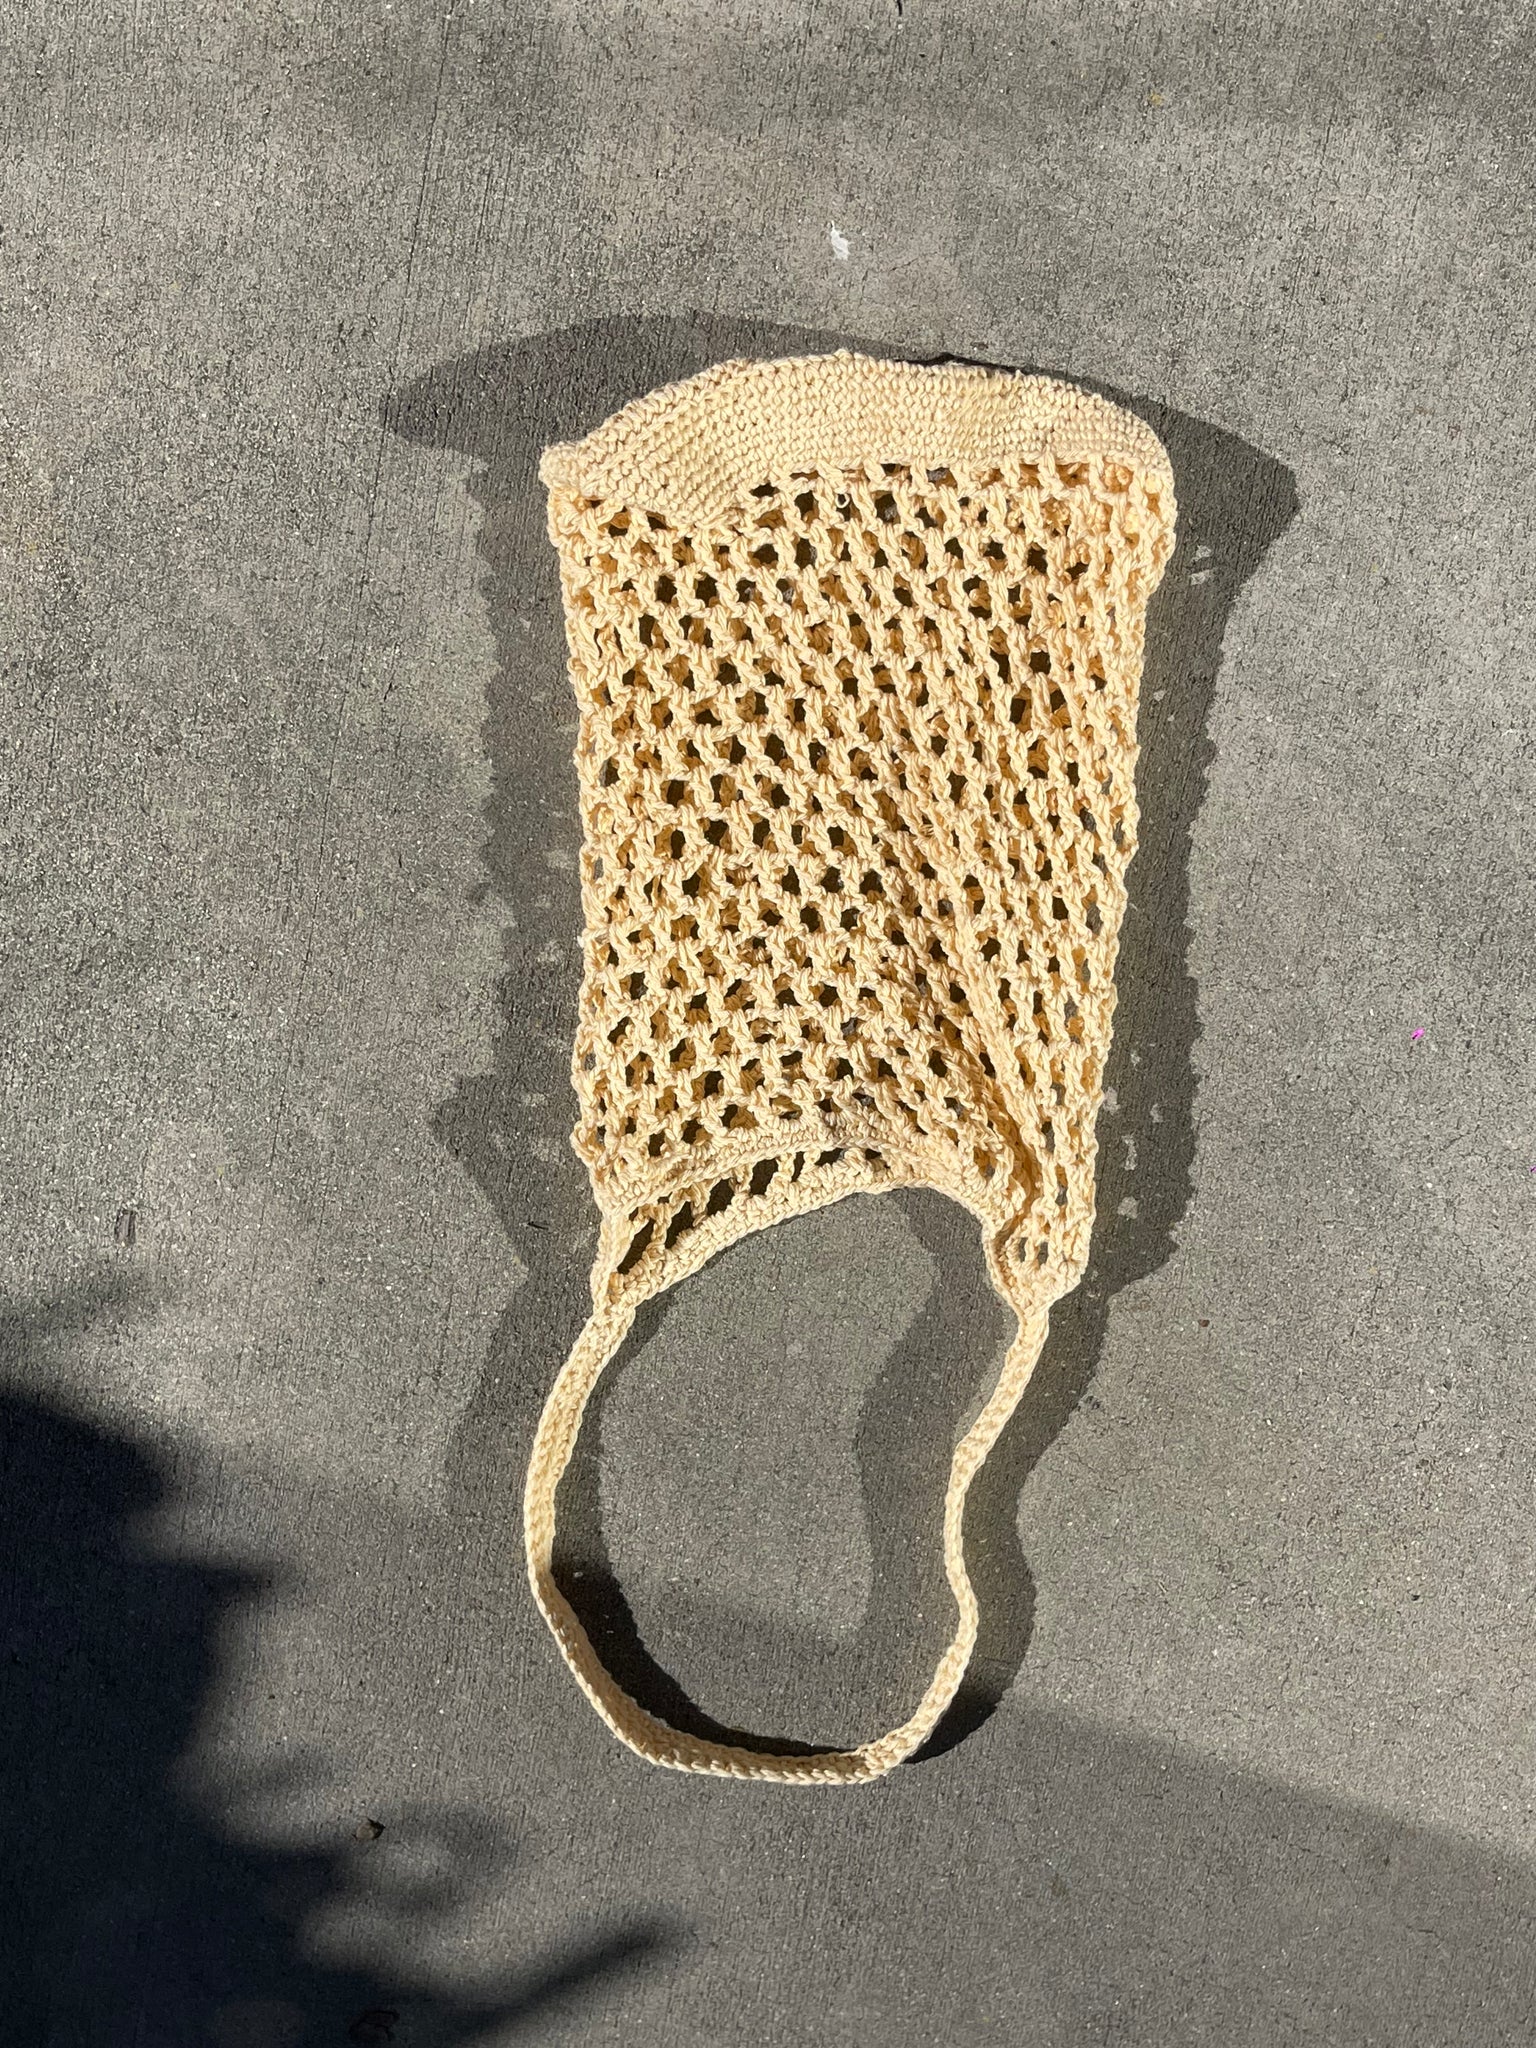 fishnet crochet tote